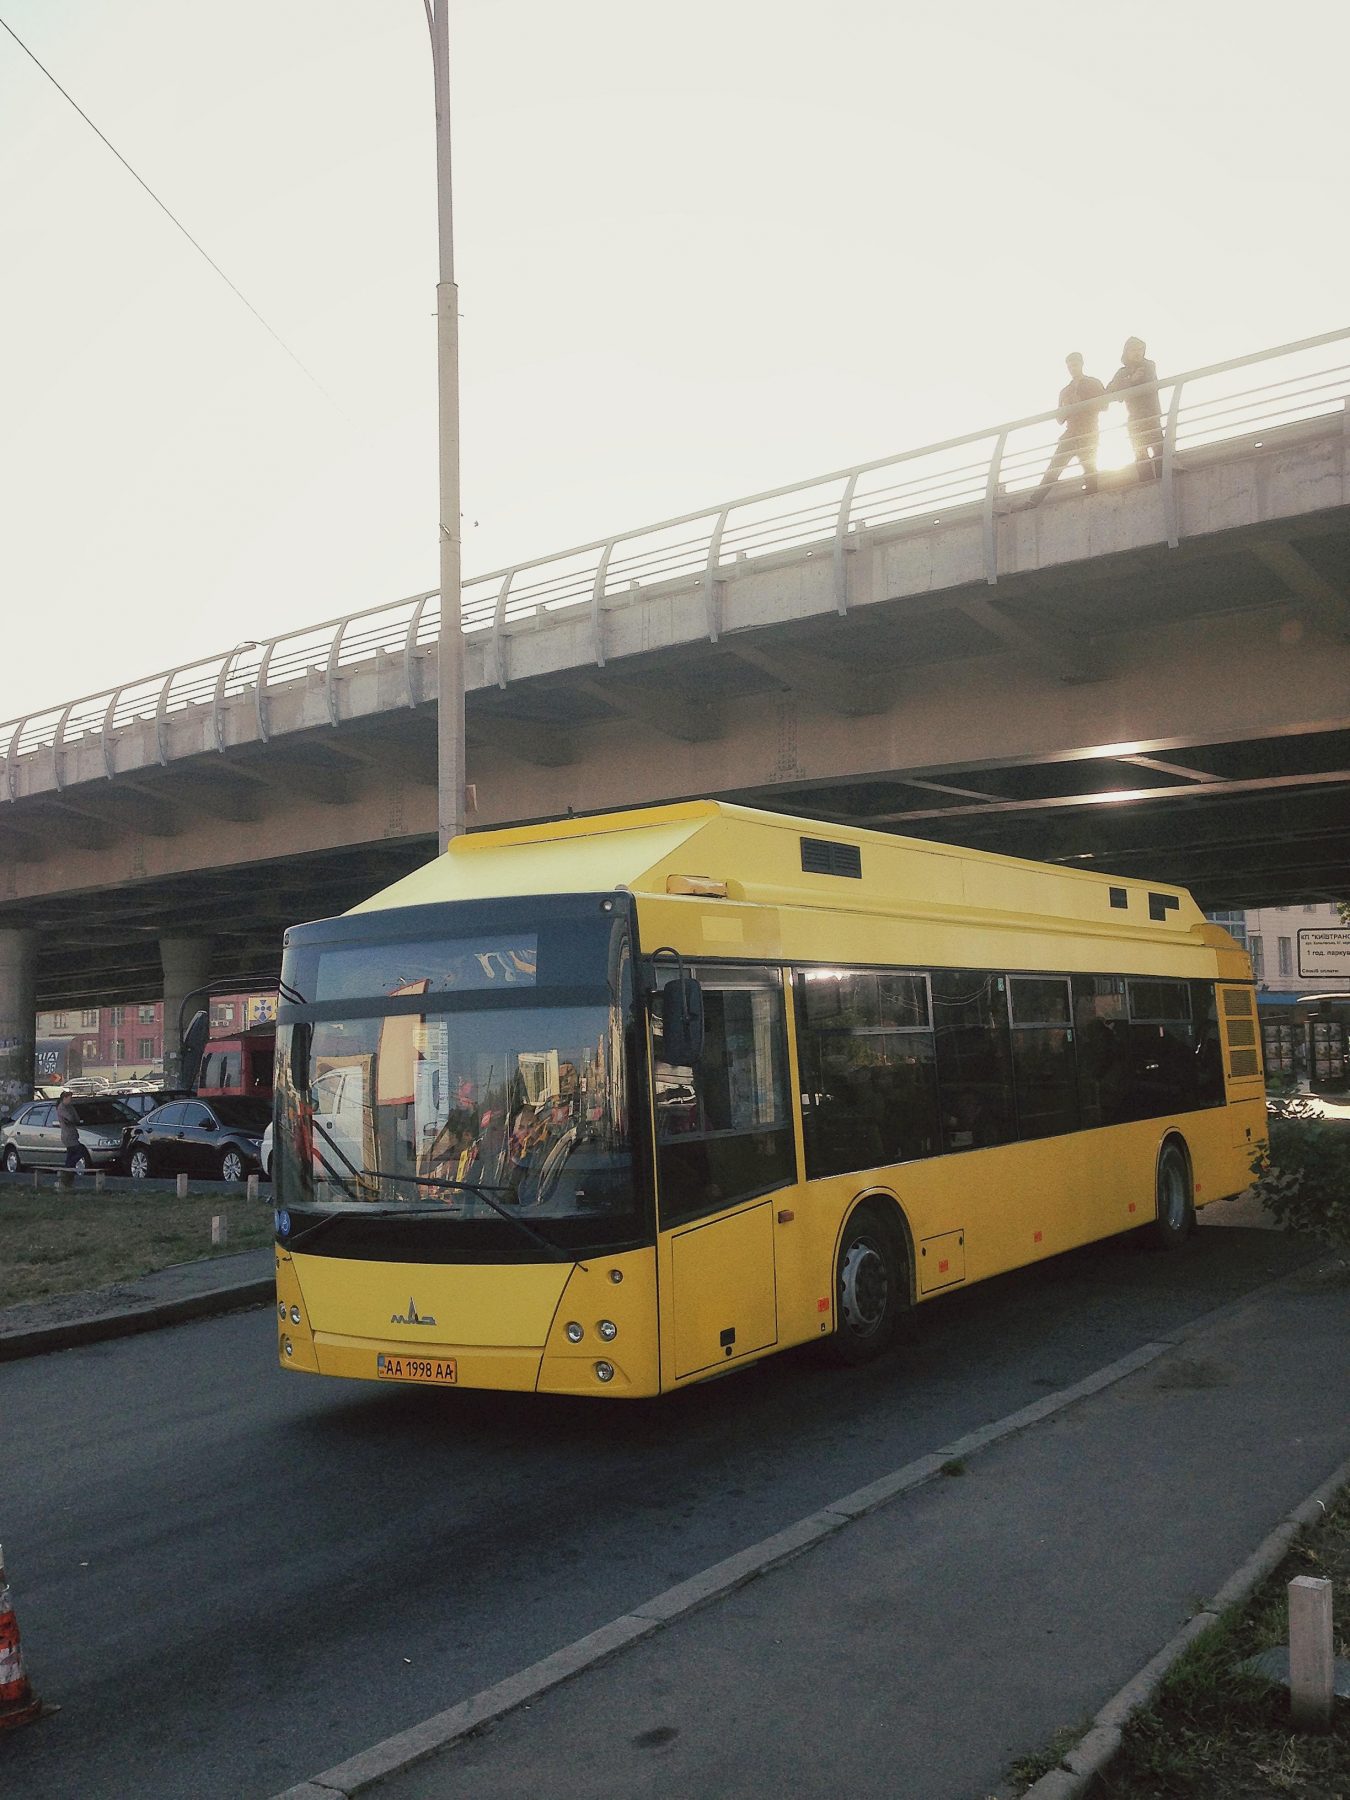 ukraine bus stunt